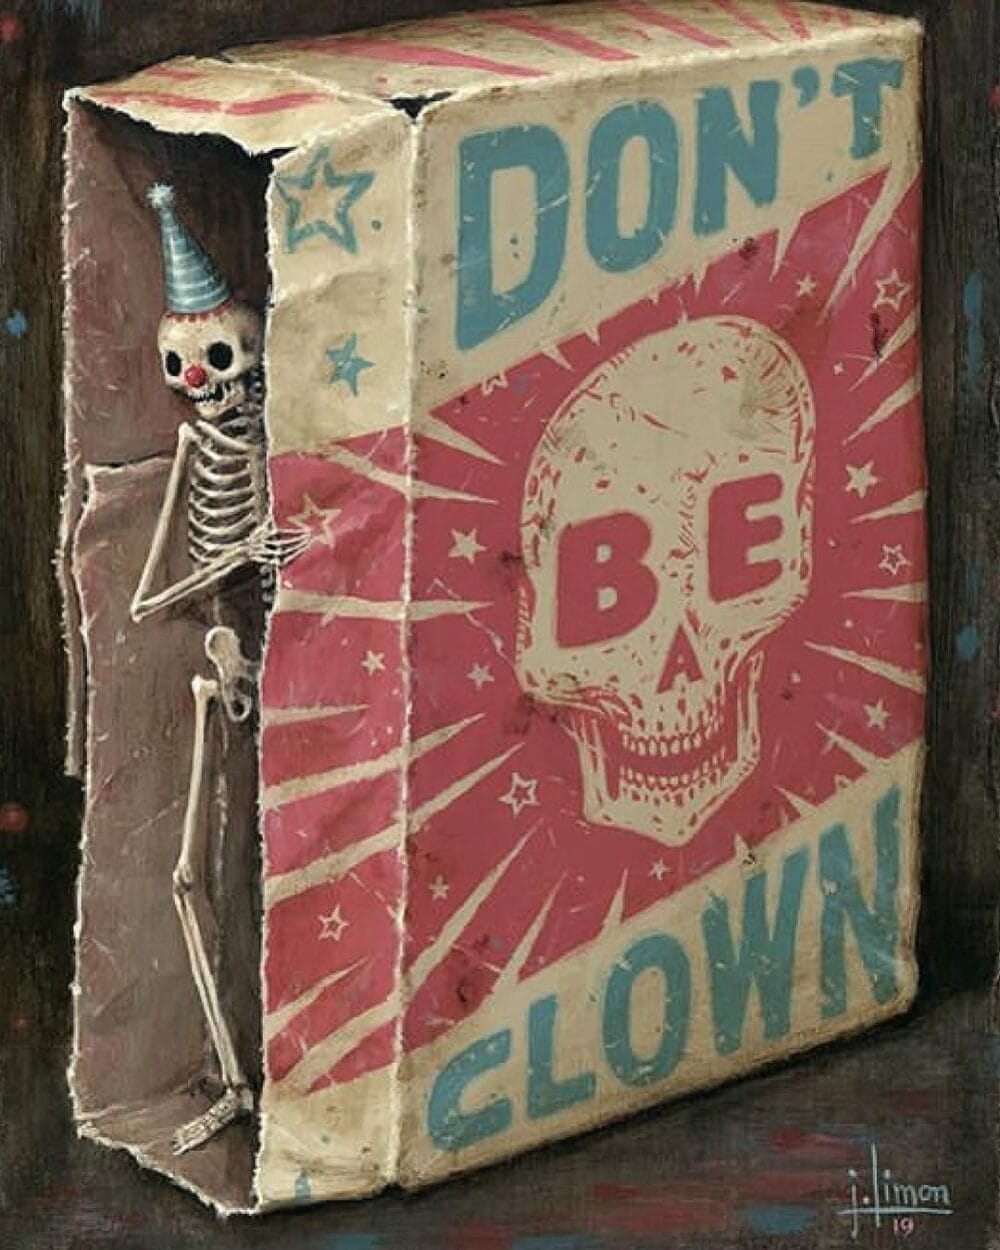 Ce tableau représente un squelette dans une boîte "dont be a clown".